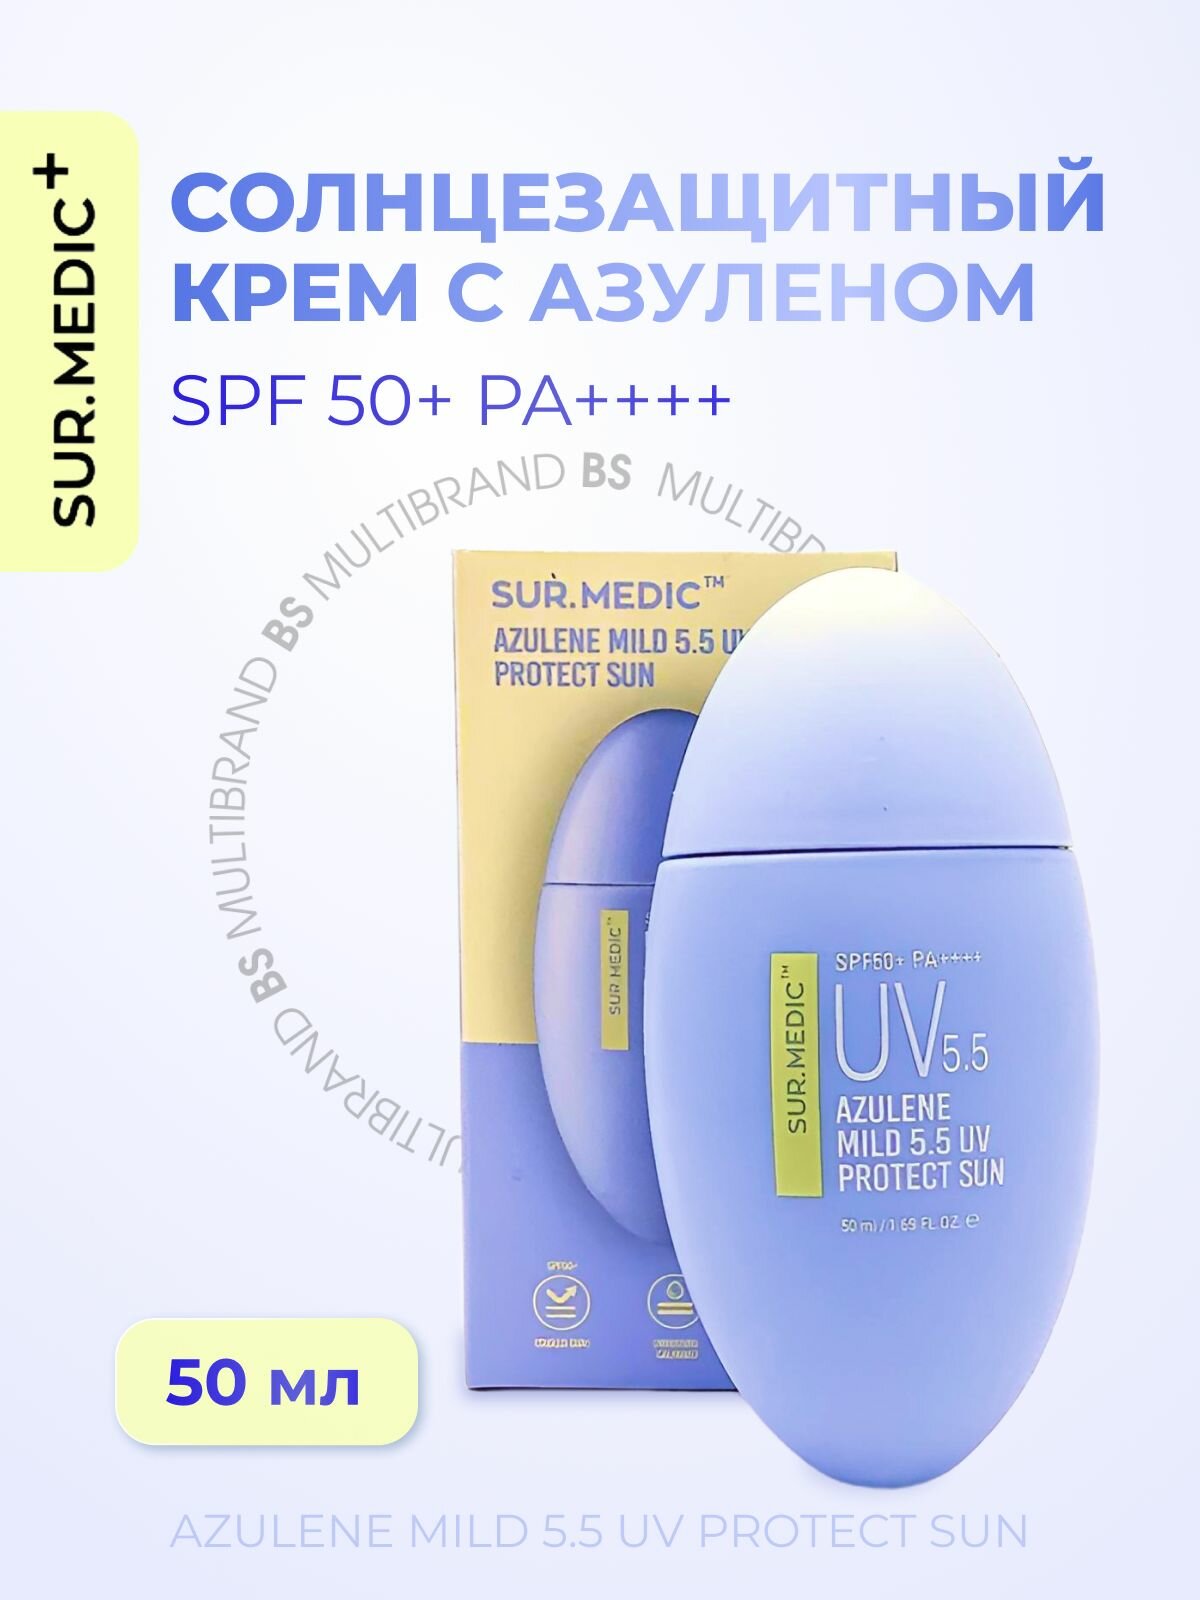 SUR. MEDIC+ Успокаивающий солнцезащитный крем с азуленом SUR. MEDIC+ Azulene Mild 5.5 UV Protect Sun SPF50+ 50мл